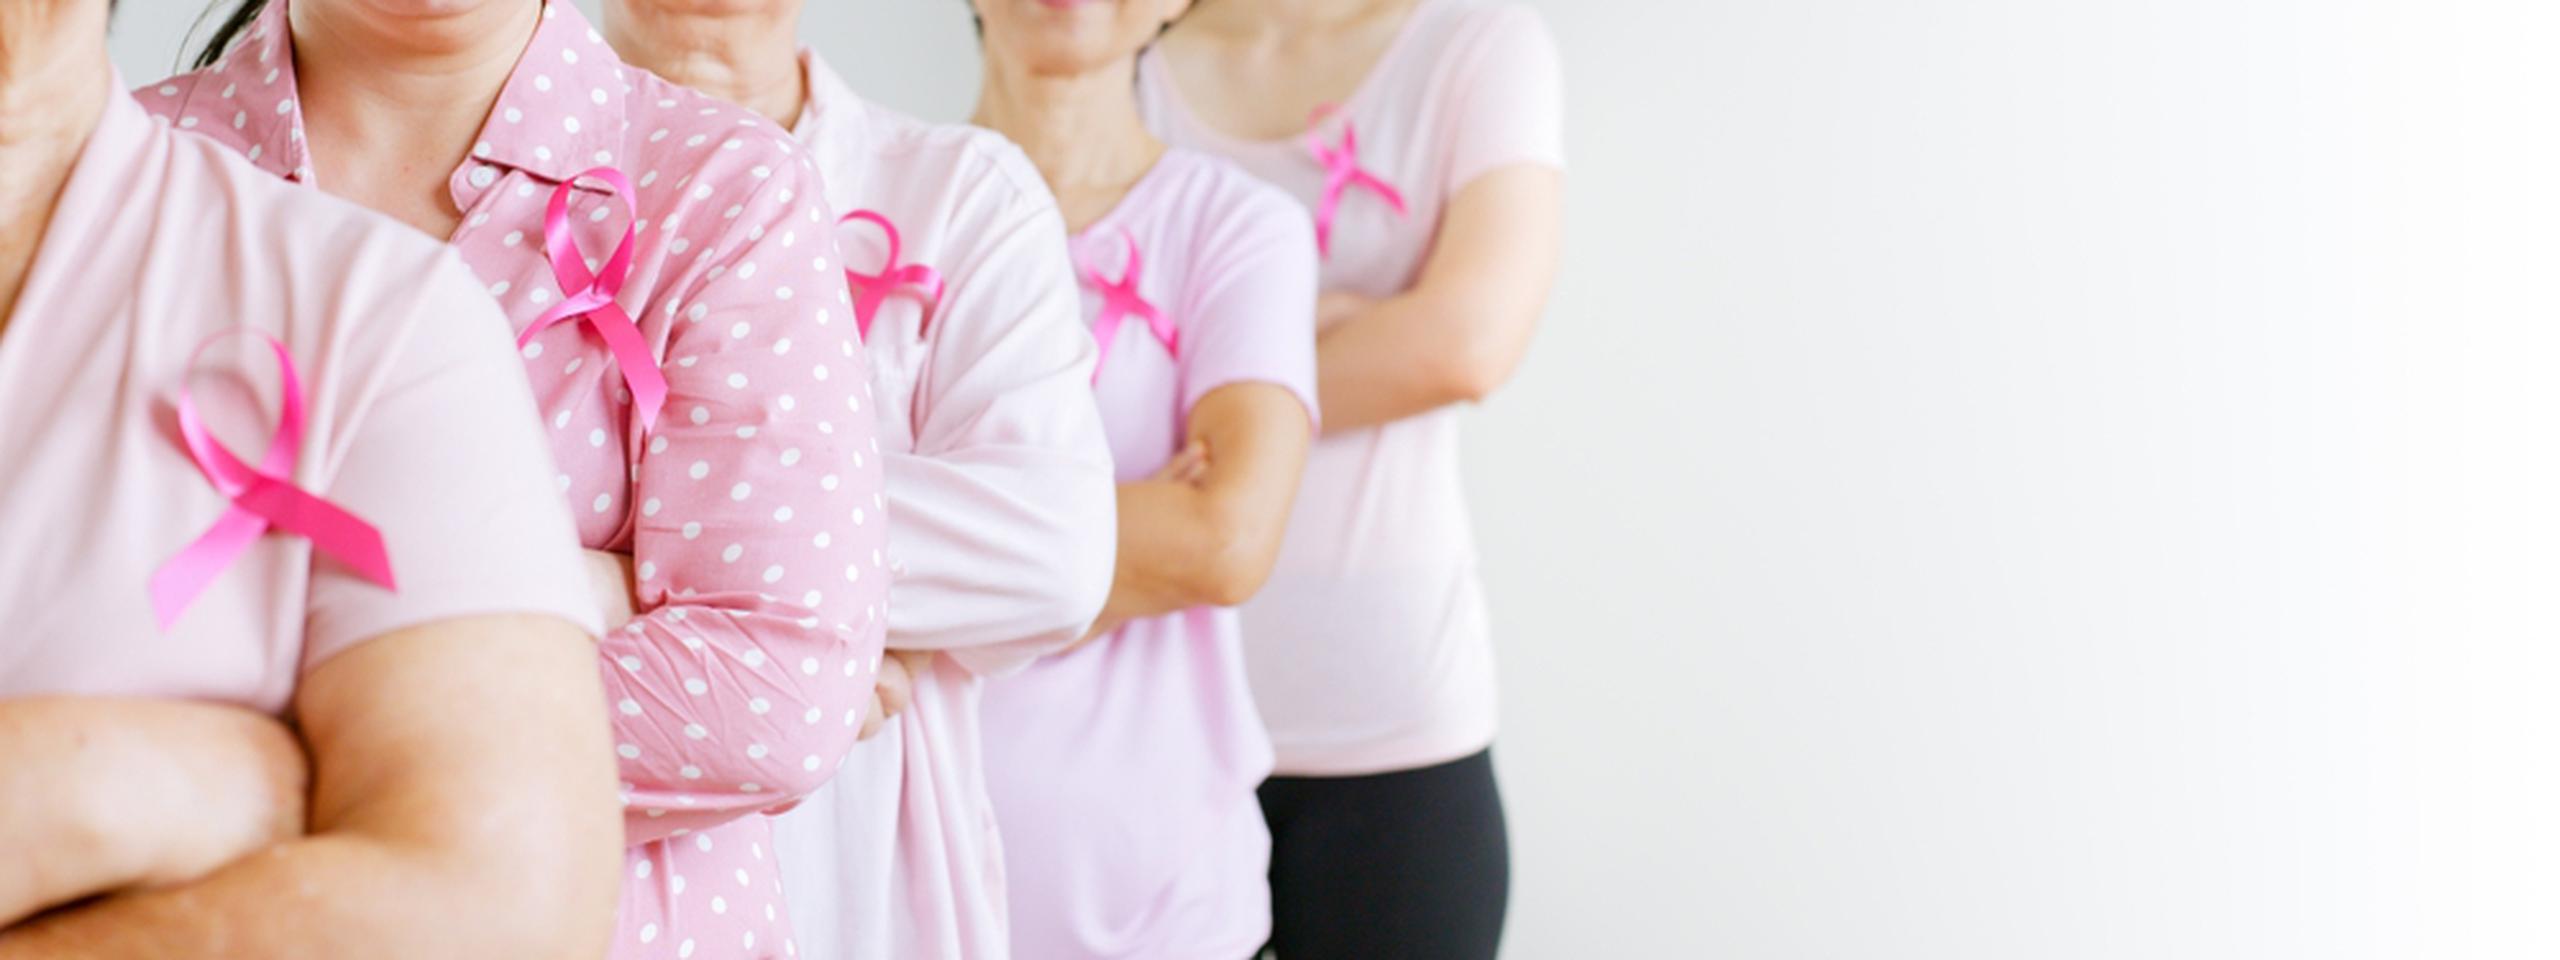 Si se detecta temprano, el cáncer de seno puede ser una enfermedad manejable, aunque sigue siendo la principal causa de muerte por cáncer en las mujeres, seguido del cáncer de pulmón, el colorrectal y el cervical.